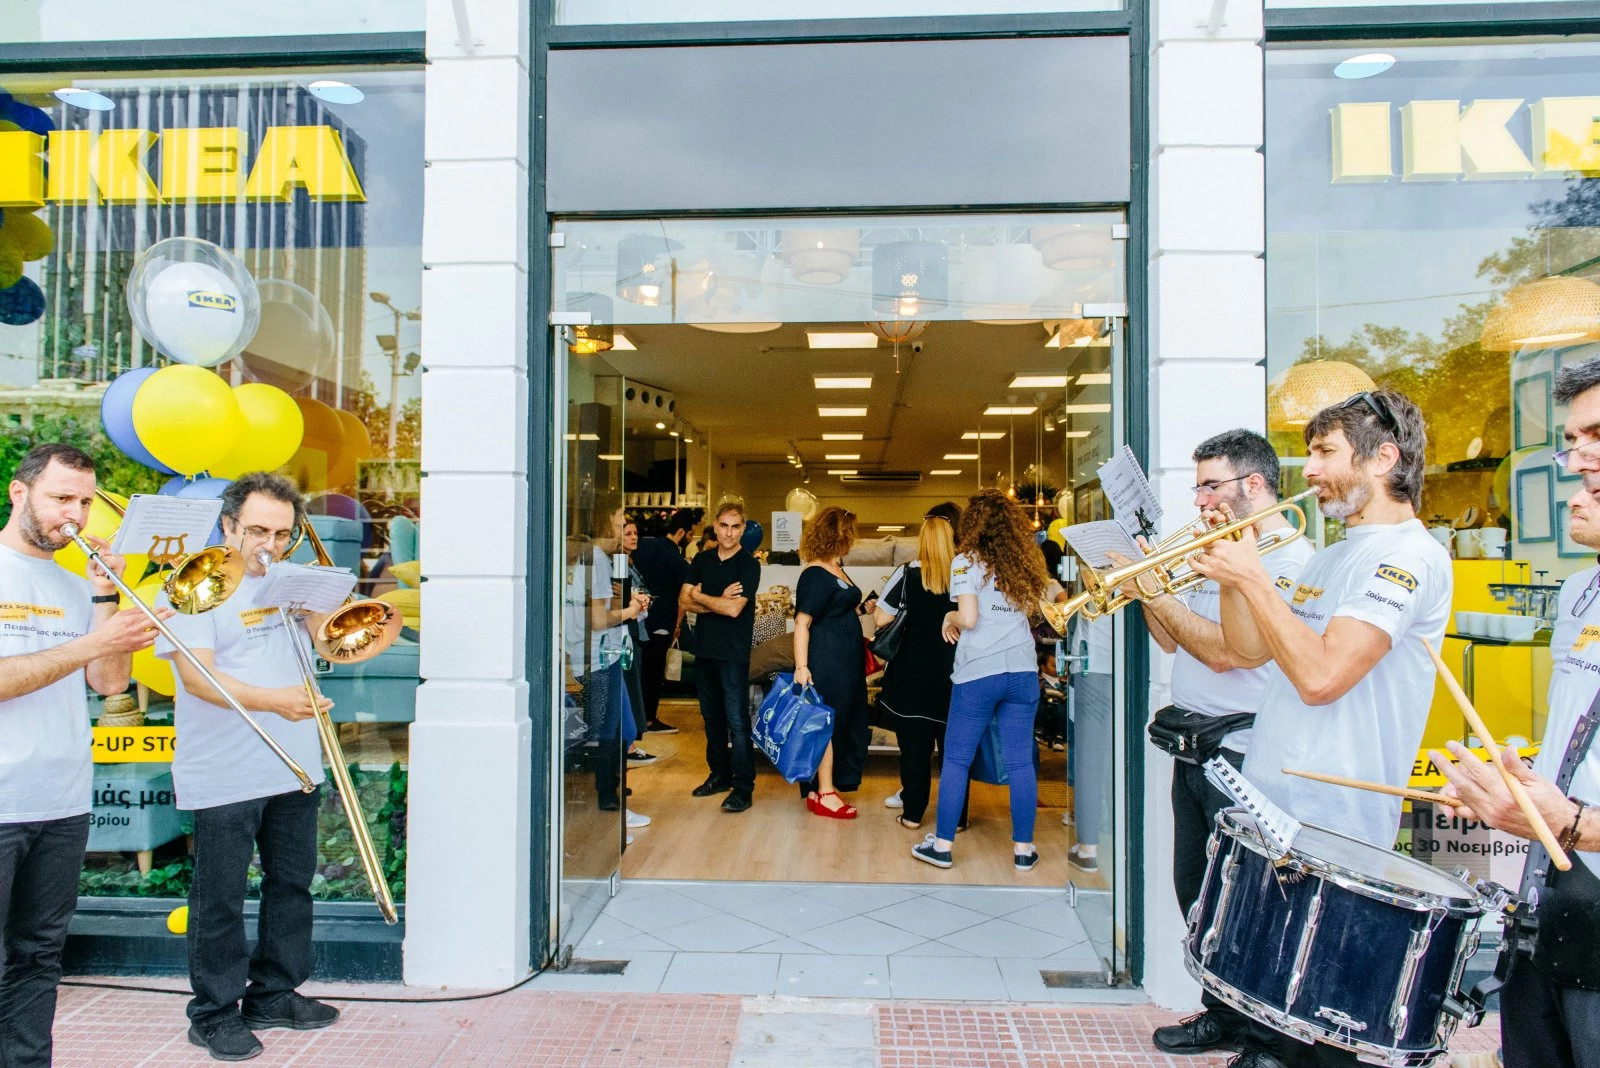 Ο Πειραιάς φιλοξενεί το νέο ΙΚΕΑ Pop-Up Store στην Ελλάδα! - εικόνα 5